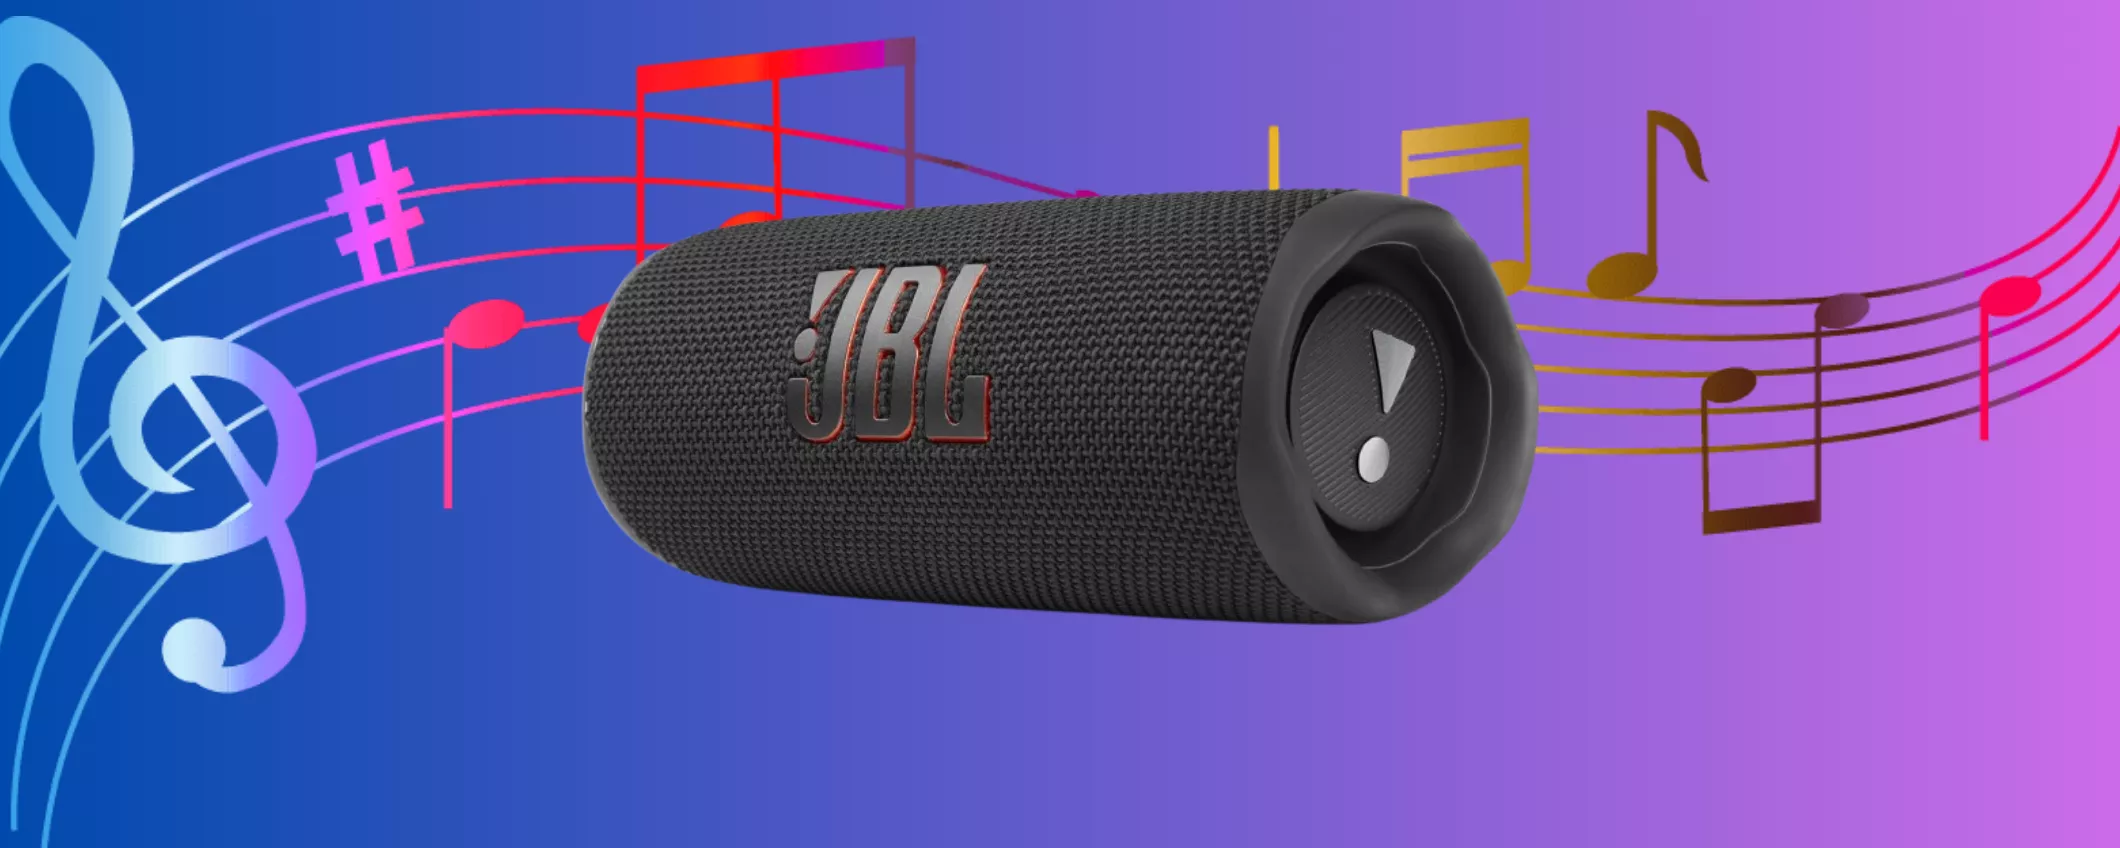 Speaker Bluetooth JBL SCONTATISSIMO AL 41%: offerta ECCEZIONALE su Amazon